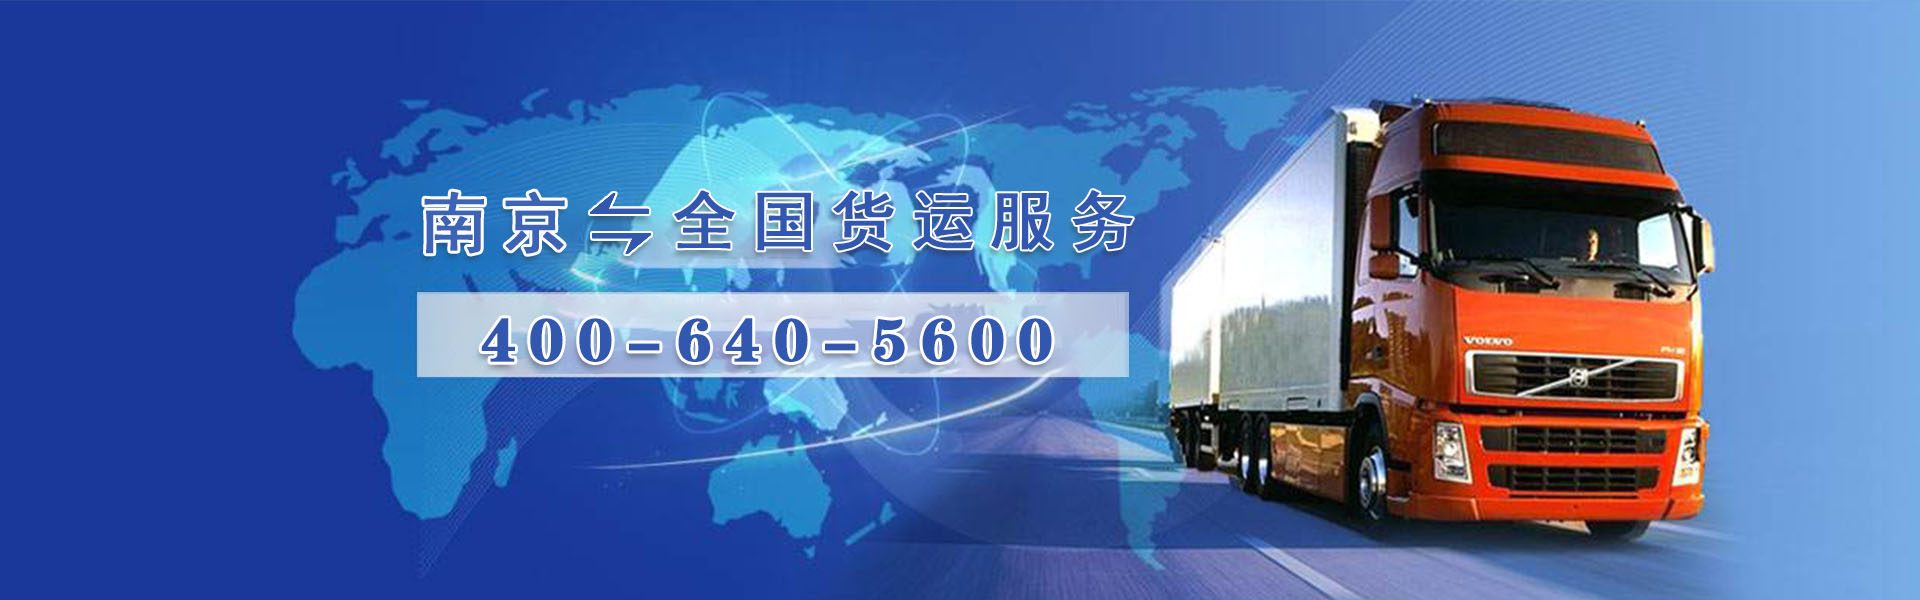 南京货运服务项目介绍